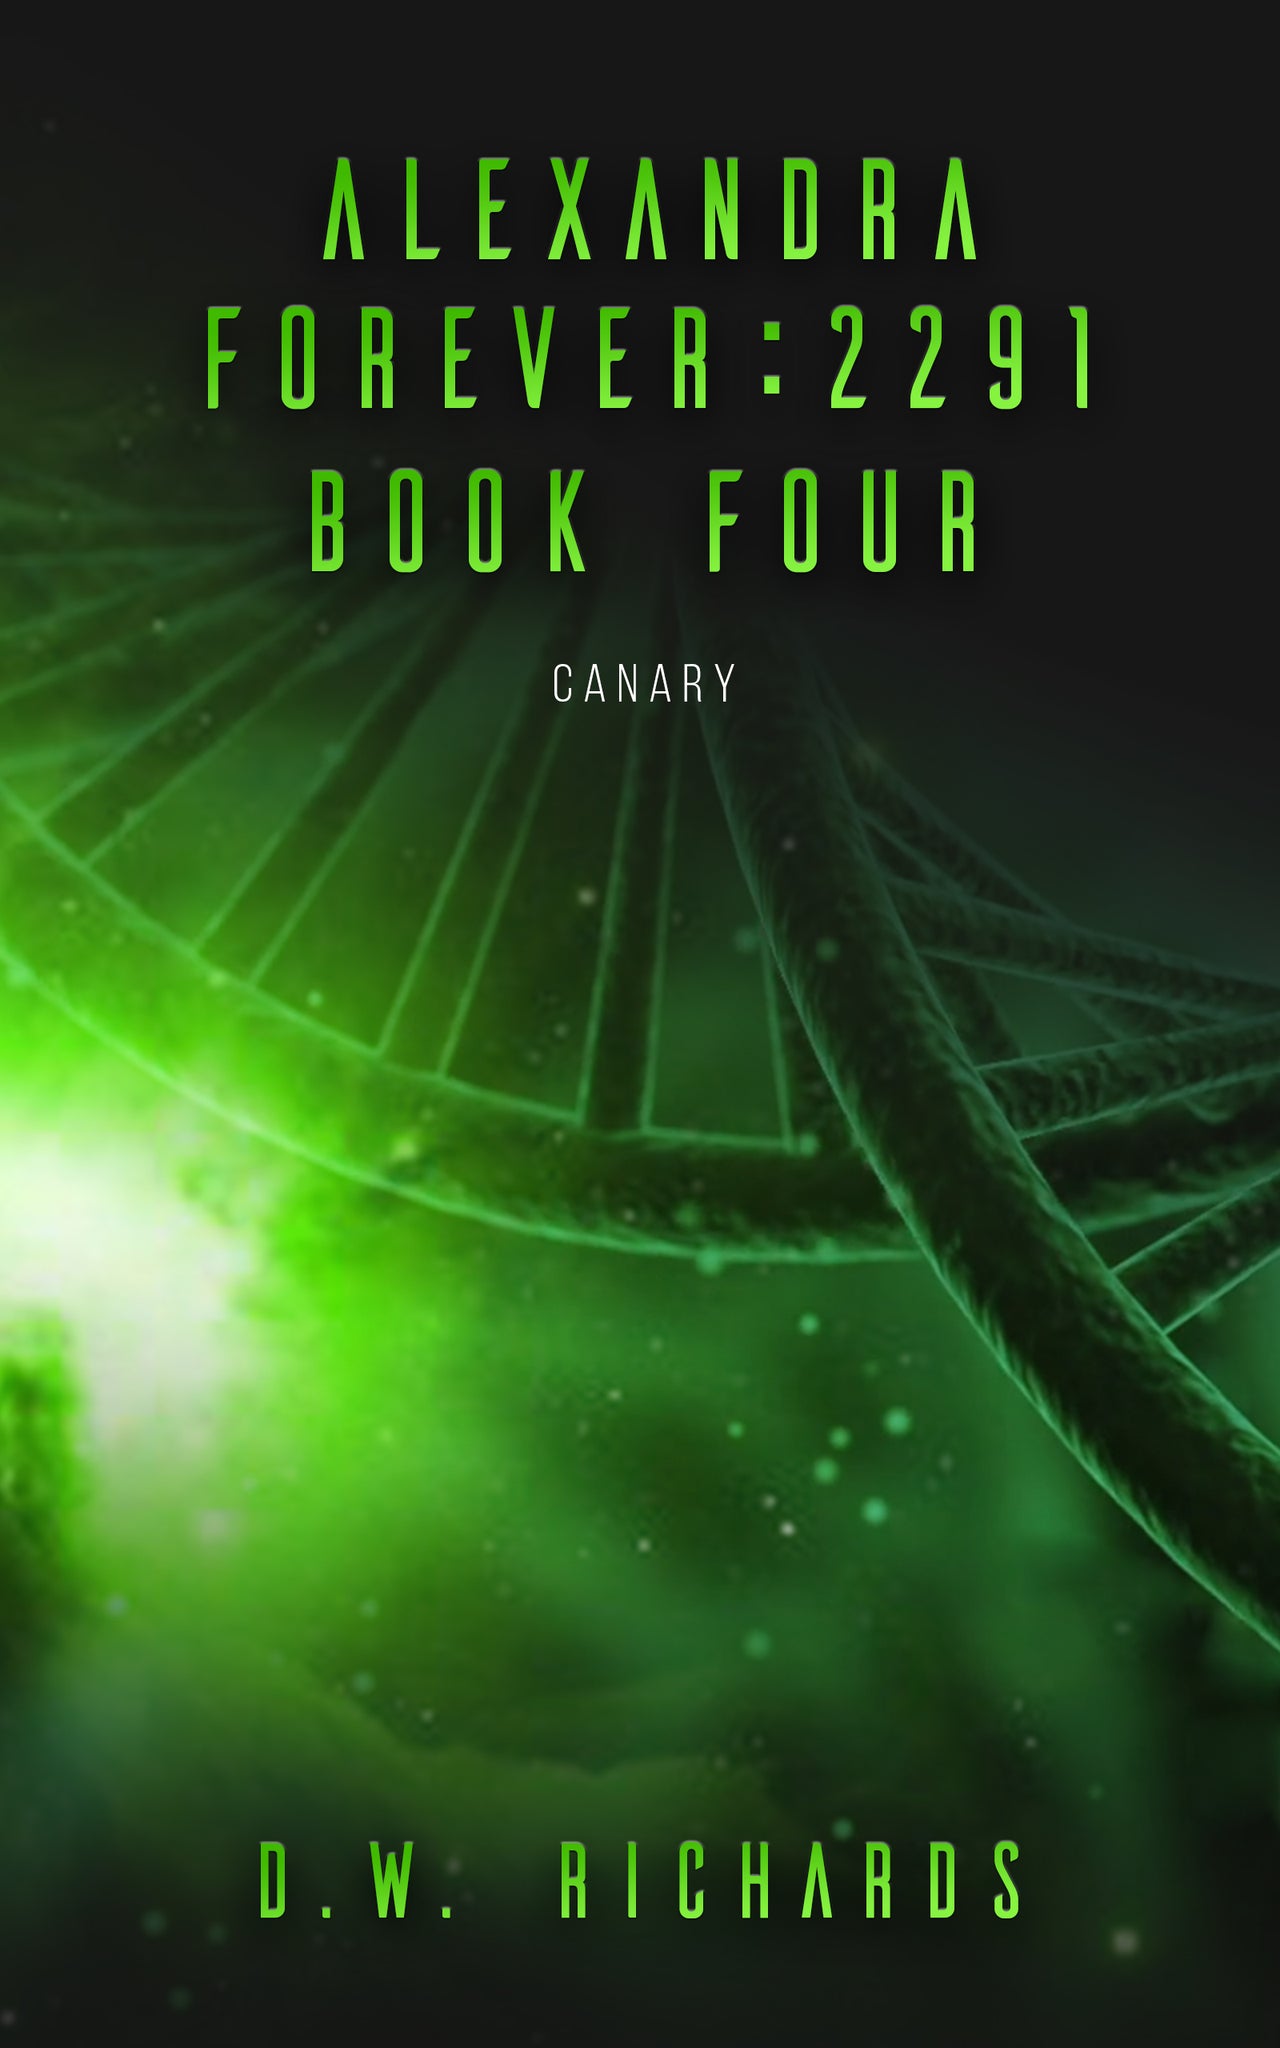 Alexandra Forever 2291 — Book Four: Canary (epub)